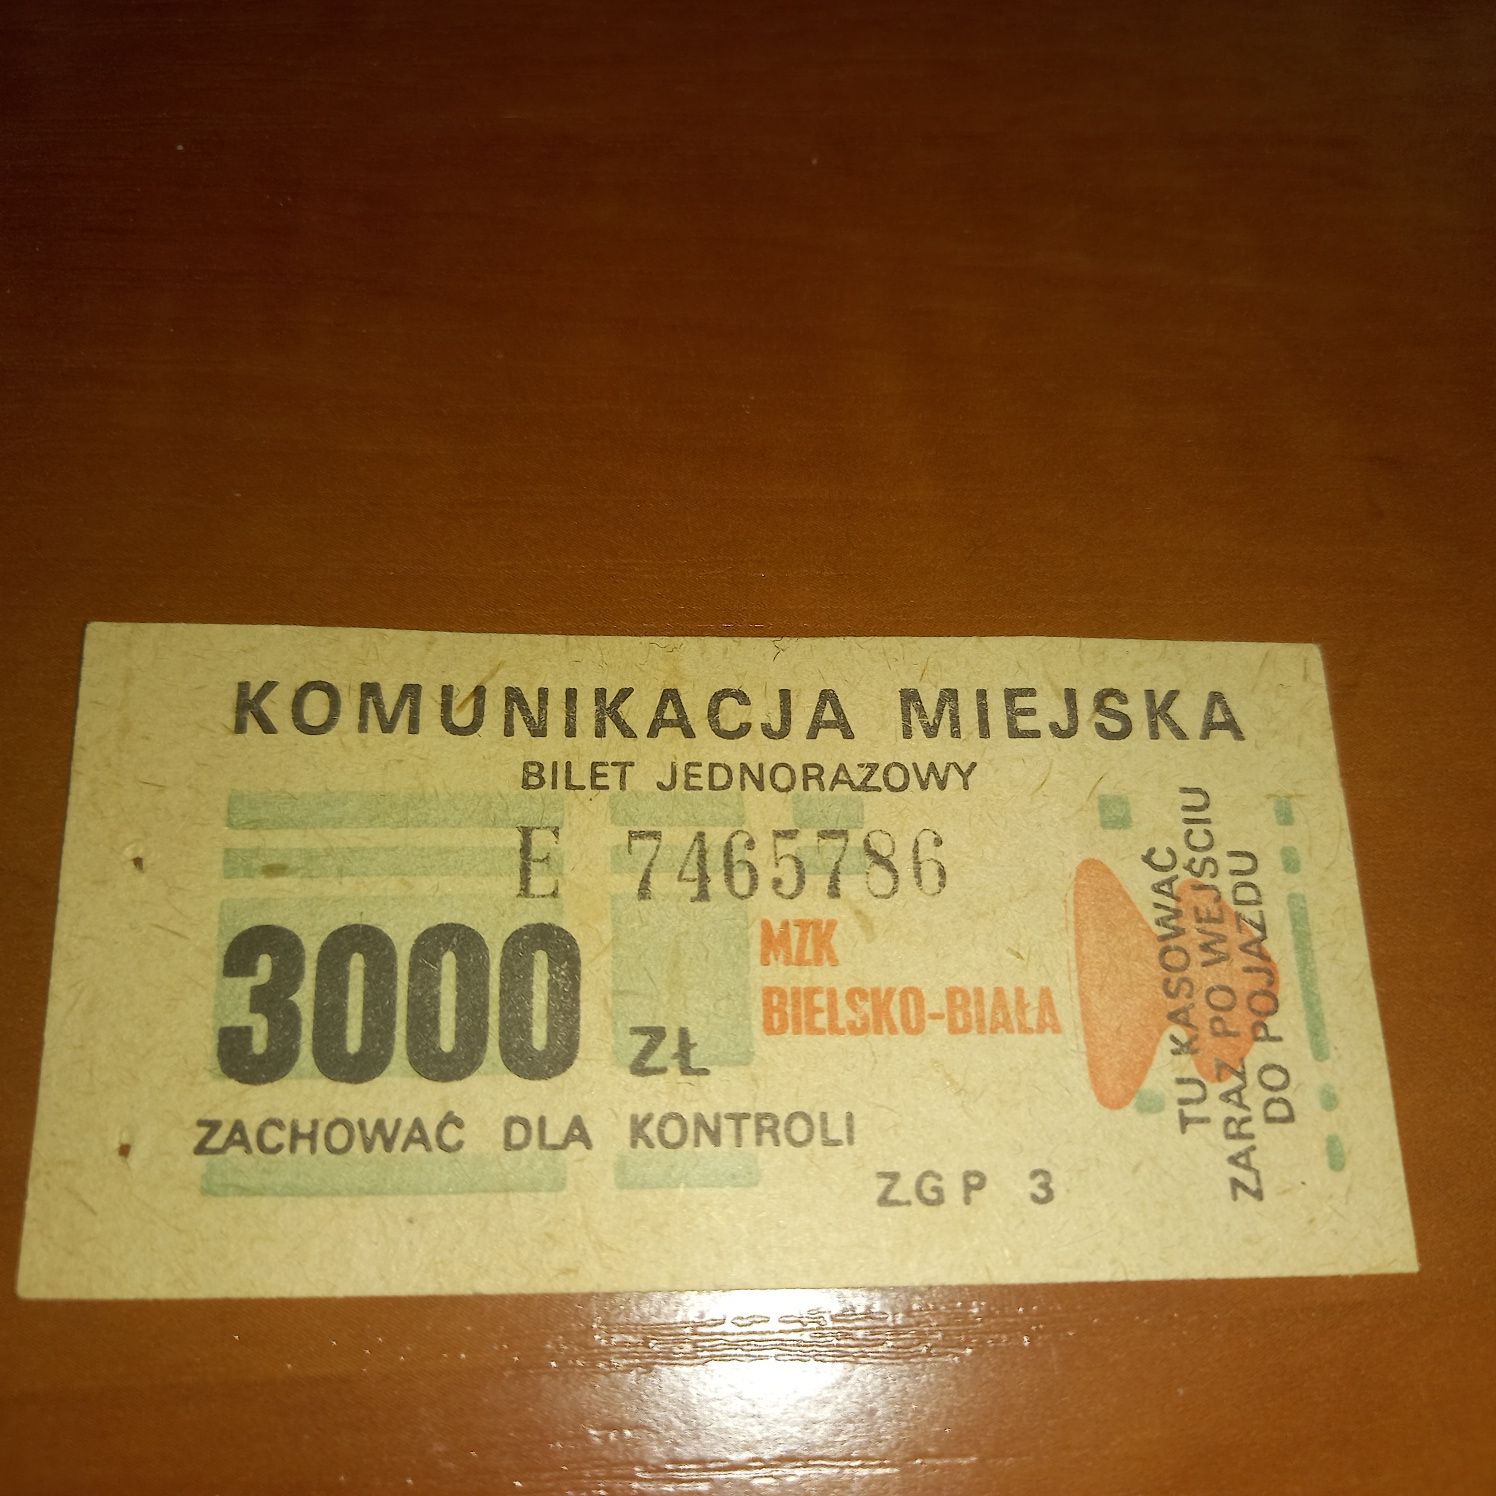 Bilet MZK 3000tys. Zł